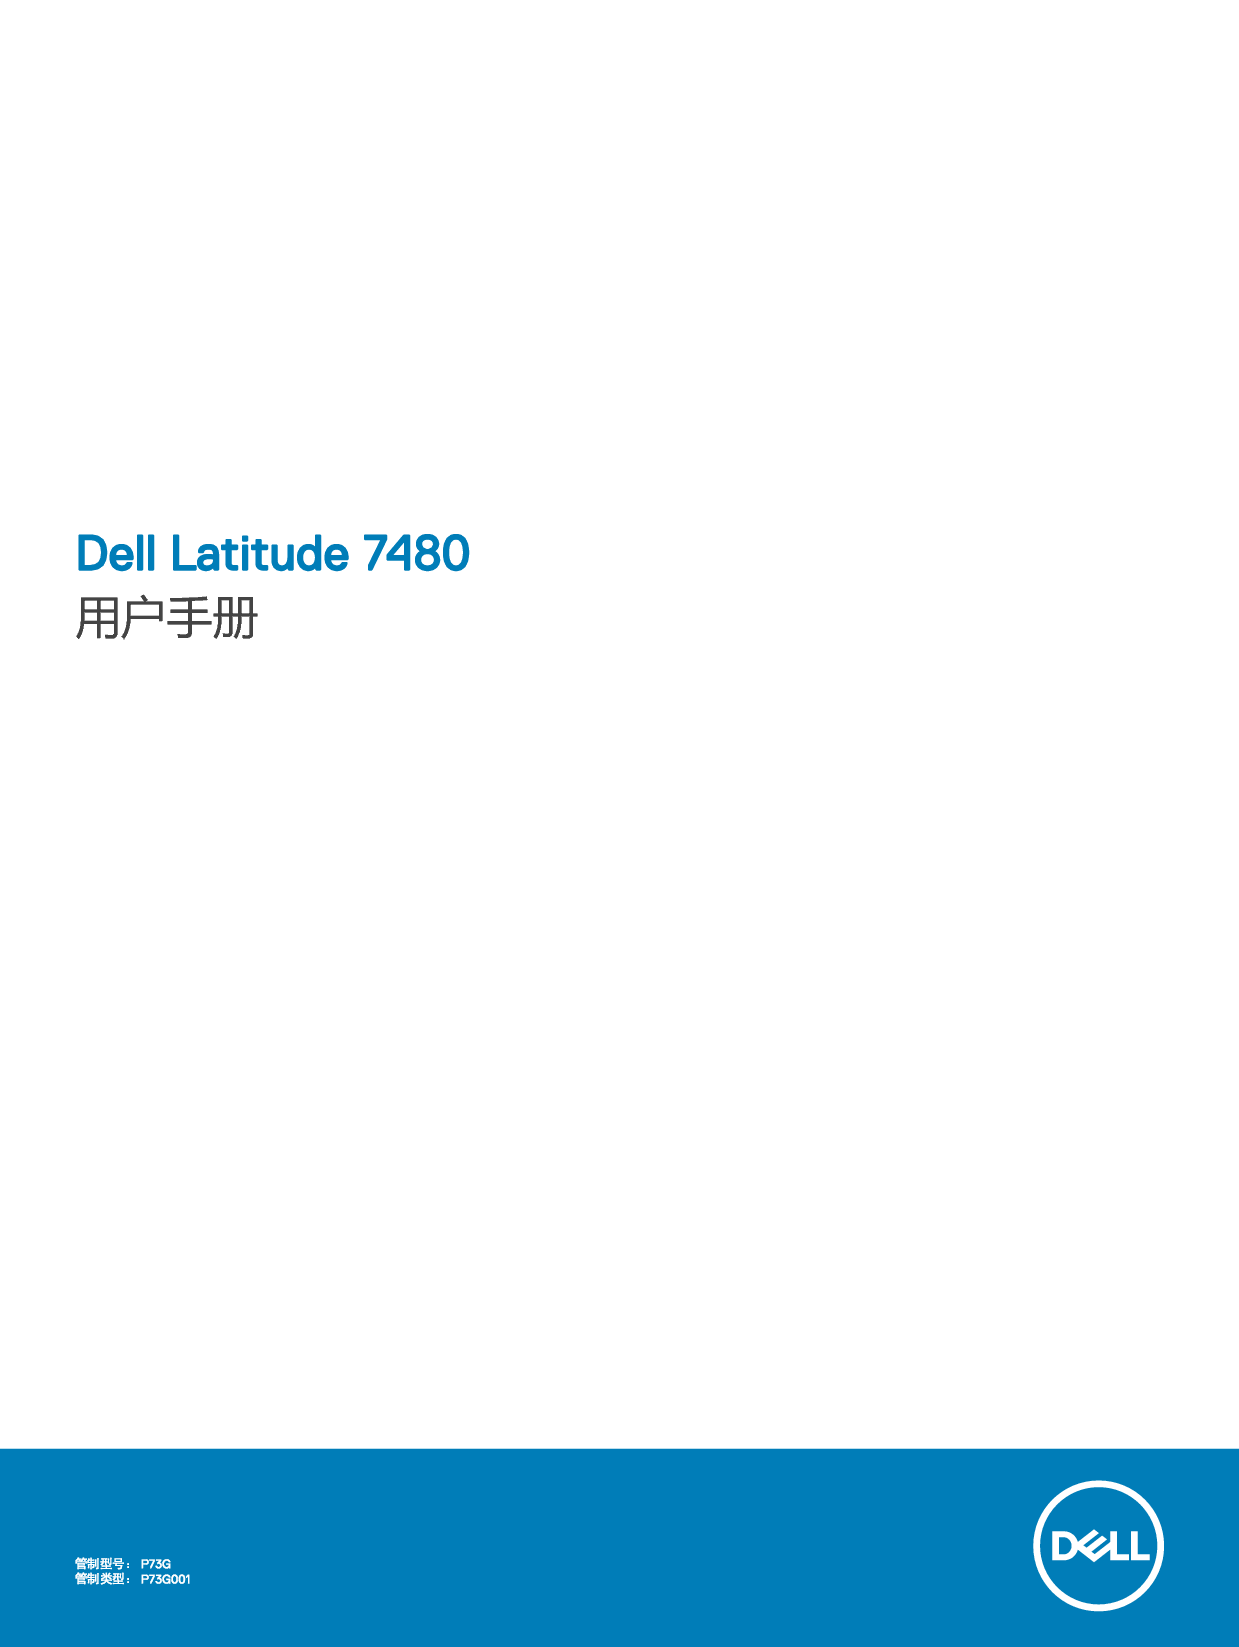 戴尔 Dell Latitude 7480 用户手册 封面